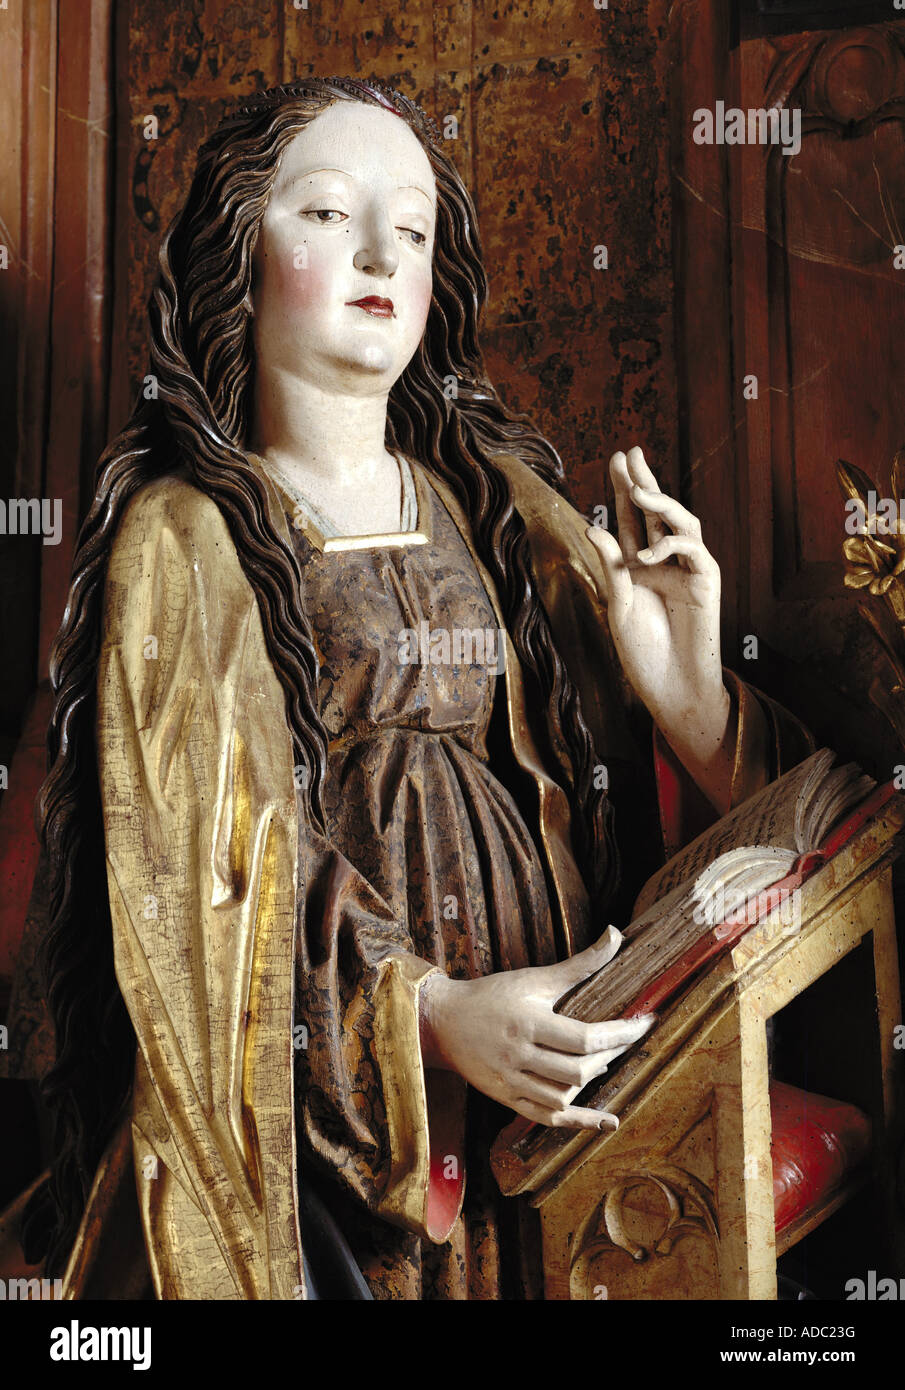 Belle arti, Santa Maria, Annunciazione altare, Maria, circa 1520, scultura, legno, Unterstadt cappella, Meersburg, artista del diritto d'autore non deve essere cancellata Foto Stock